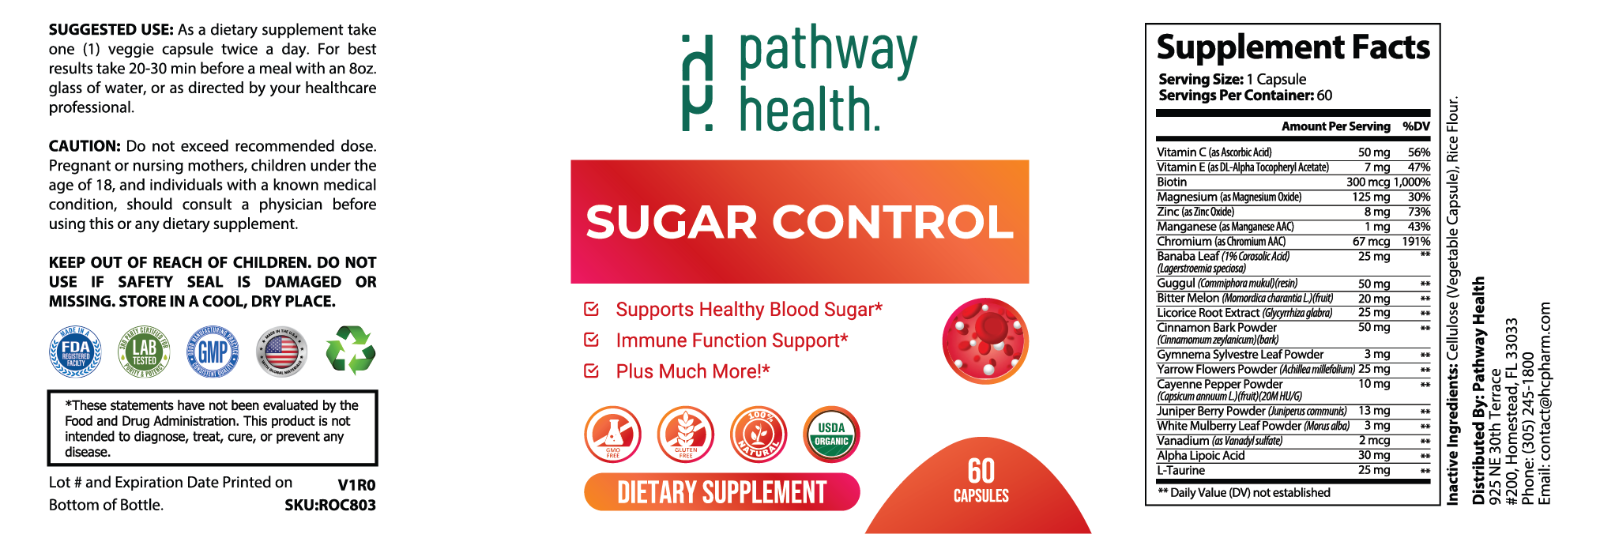 Sugar Control - Supports healthy Blood Sugar